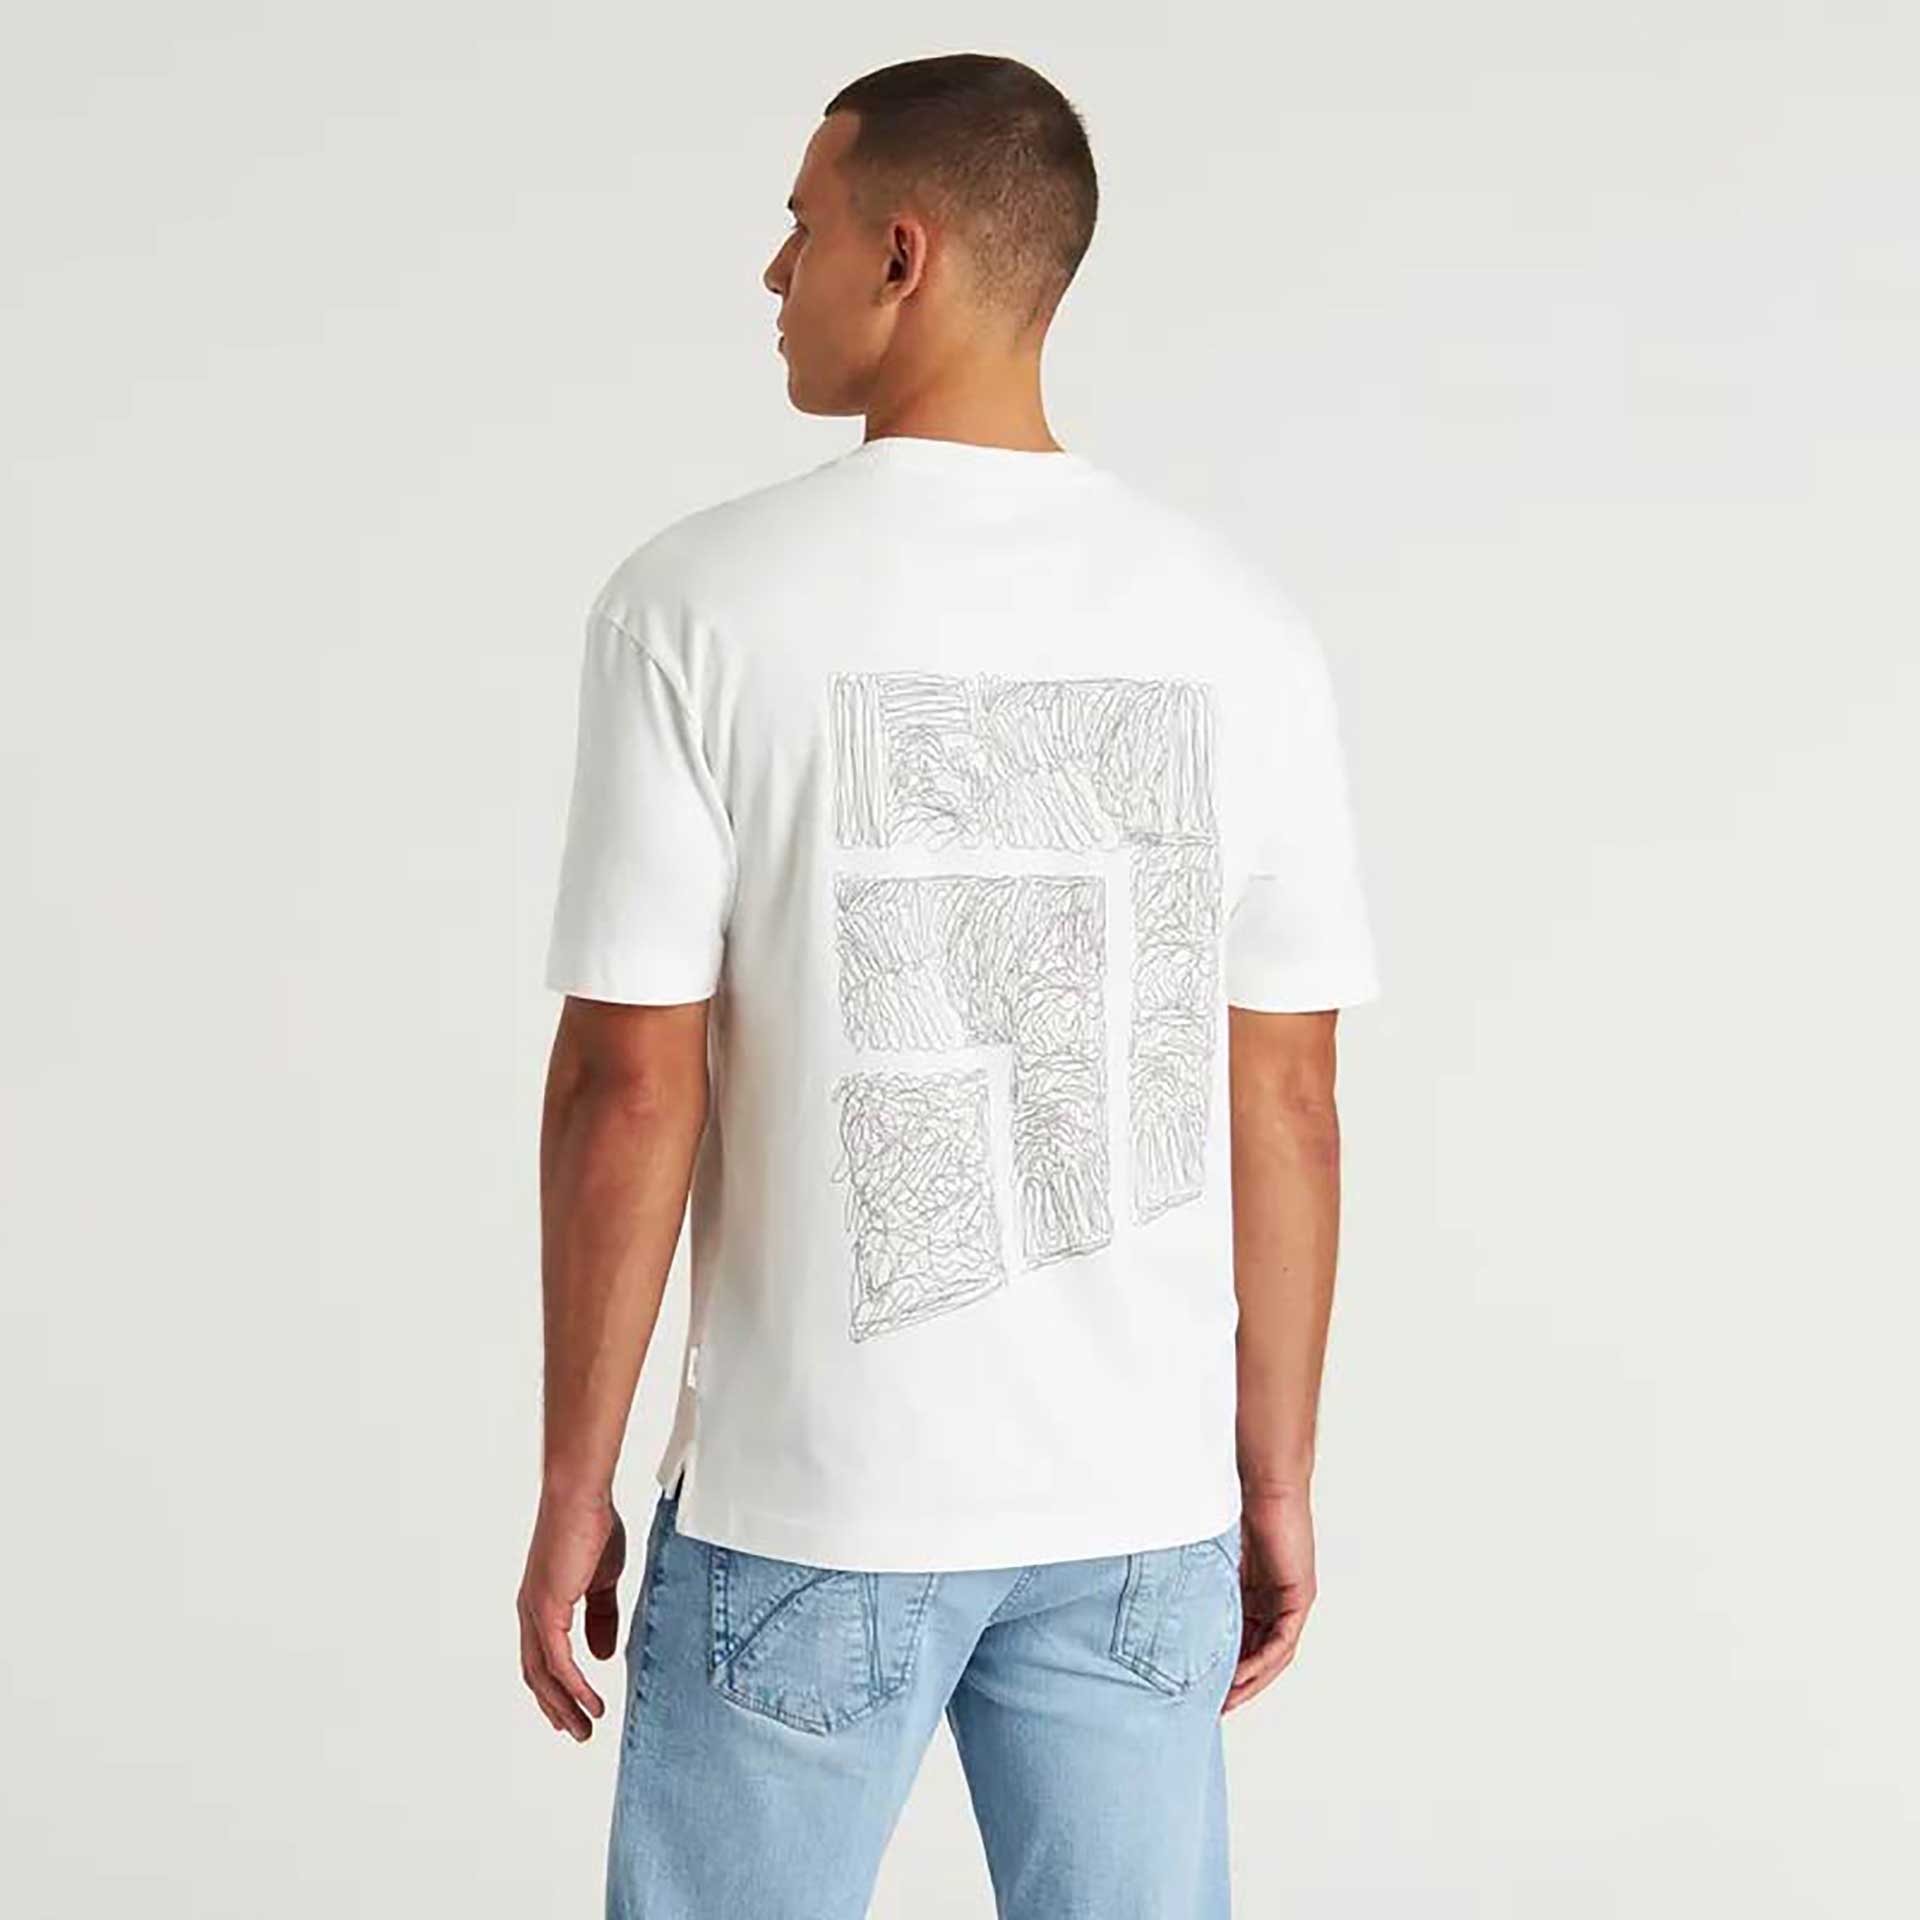 Chasin T-shirt Stitch 2